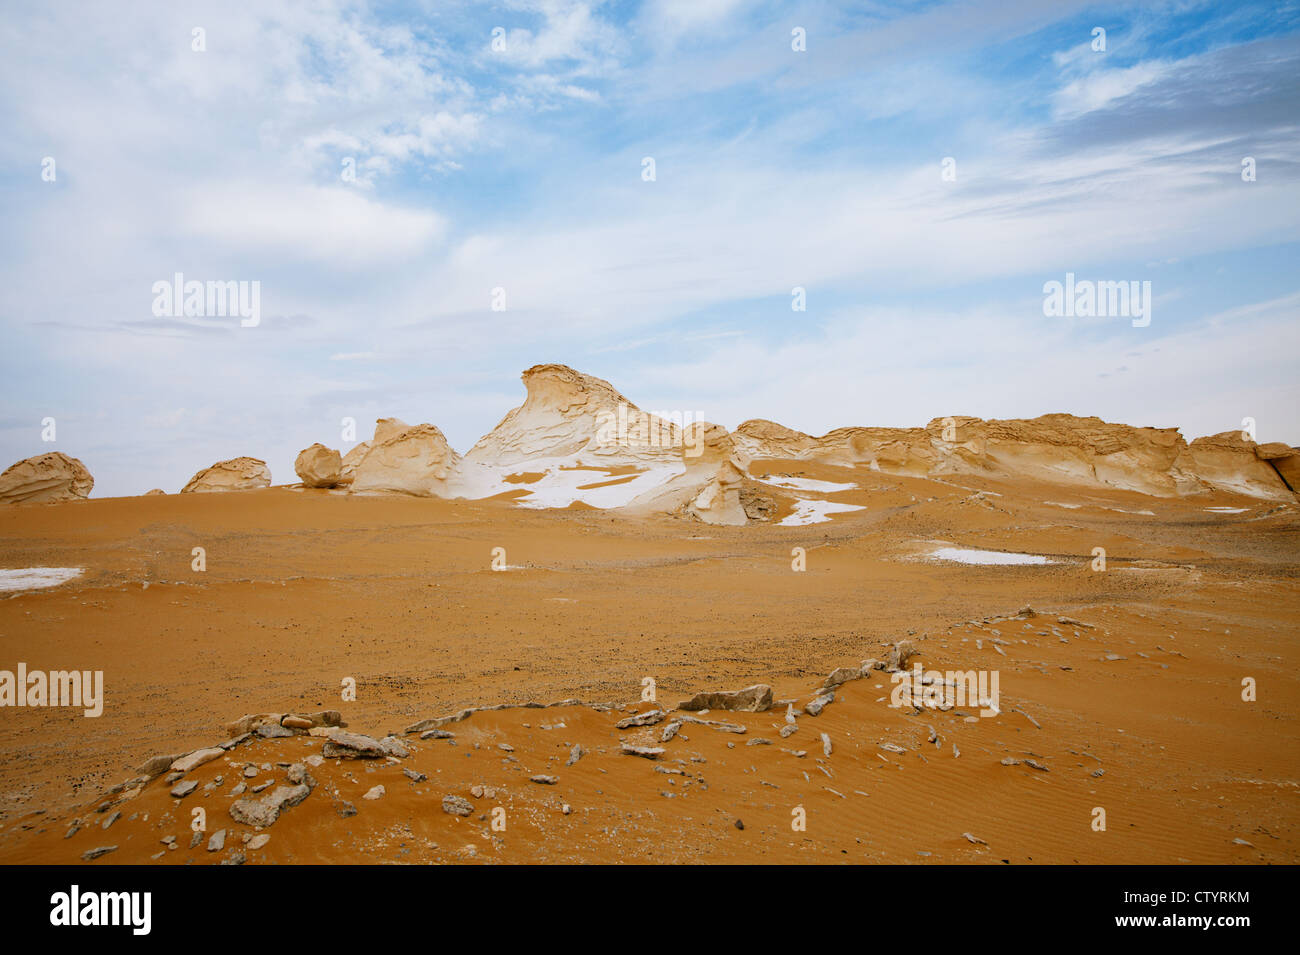 Les roches de la formation de calcaire dans le désert blanc de l'Ouest, l'Egypte Banque D'Images